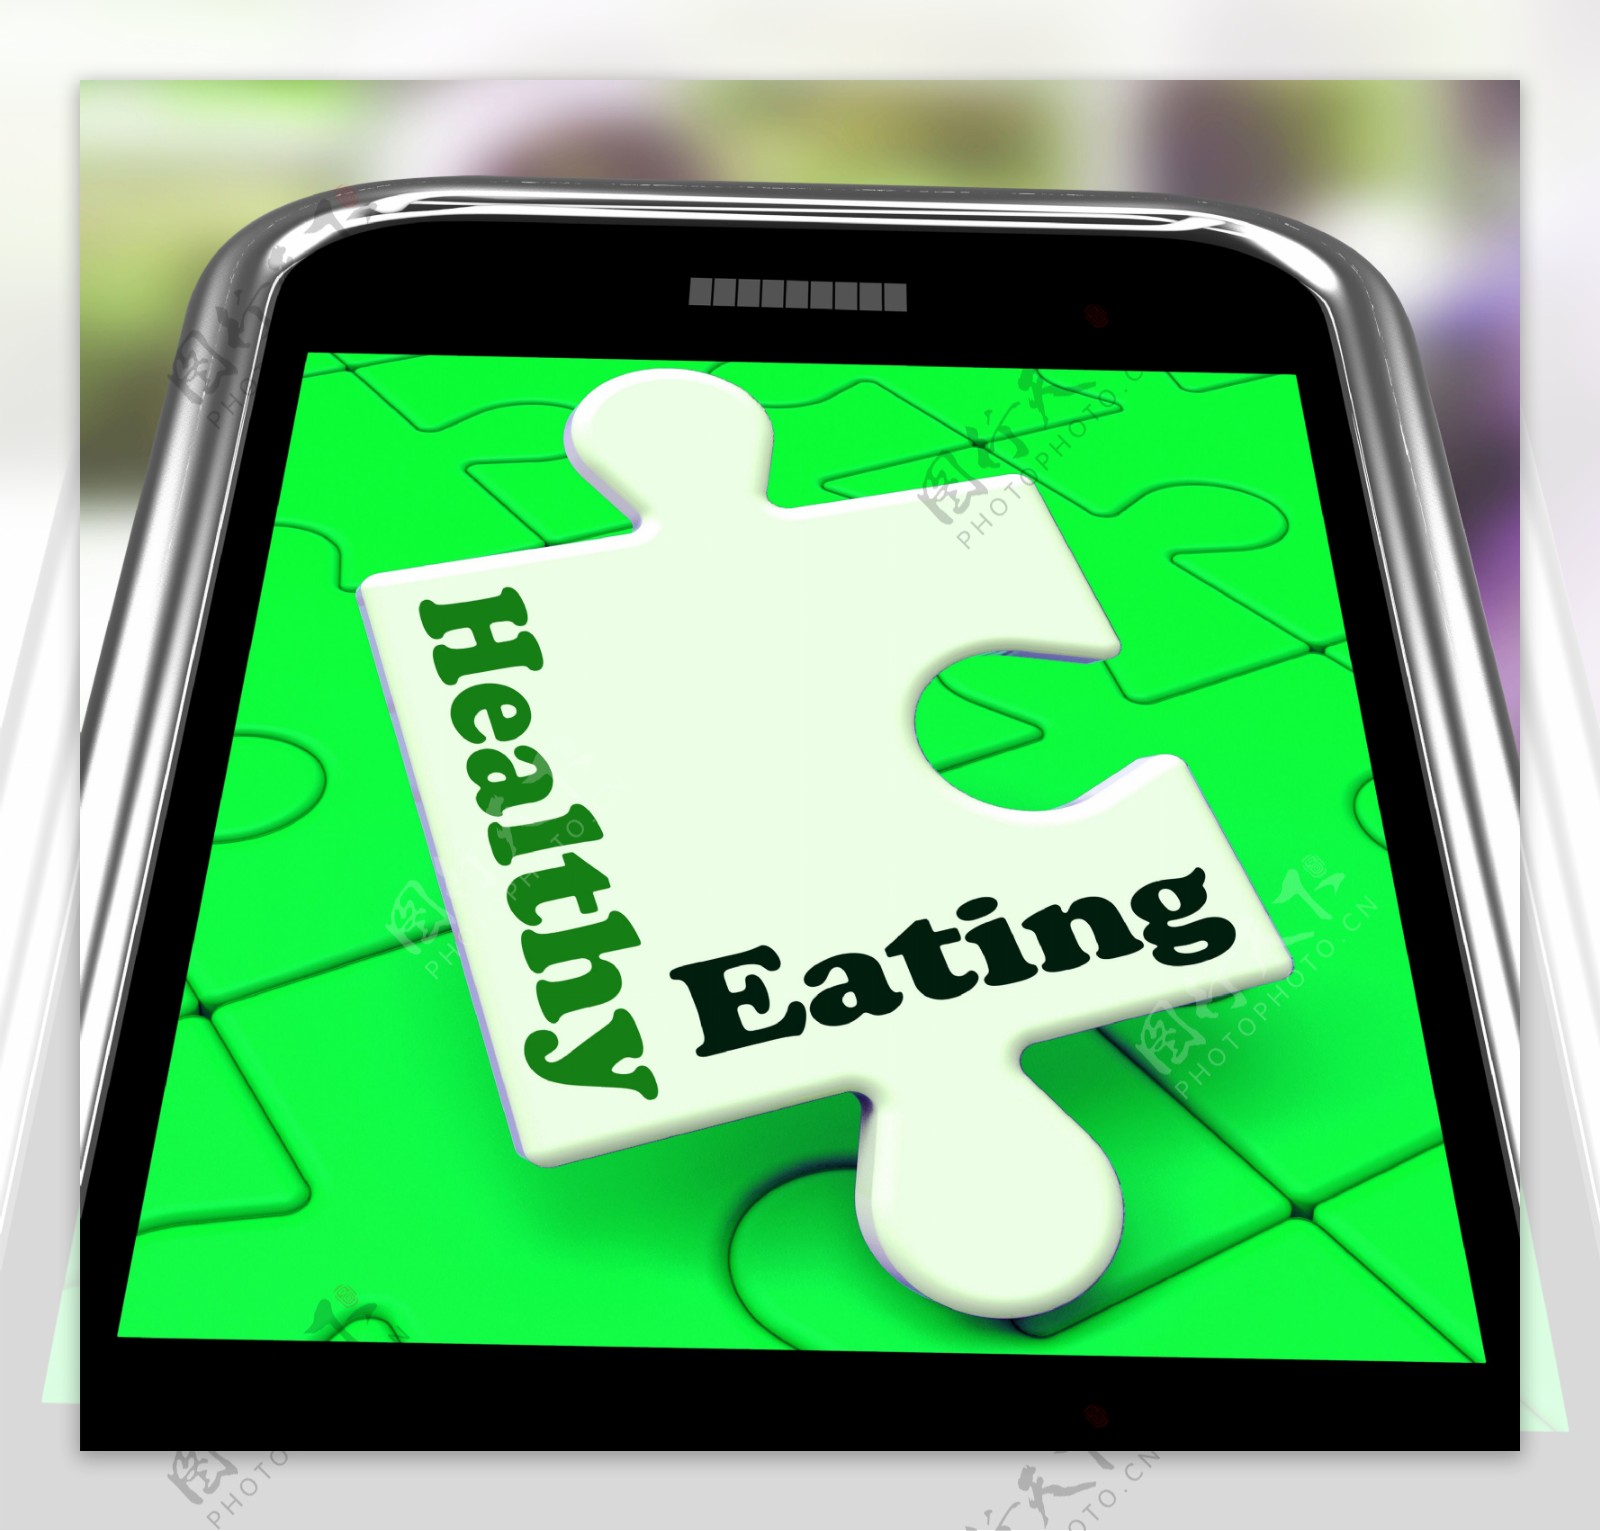 健康的饮食对智能手机的显示饮食与保健